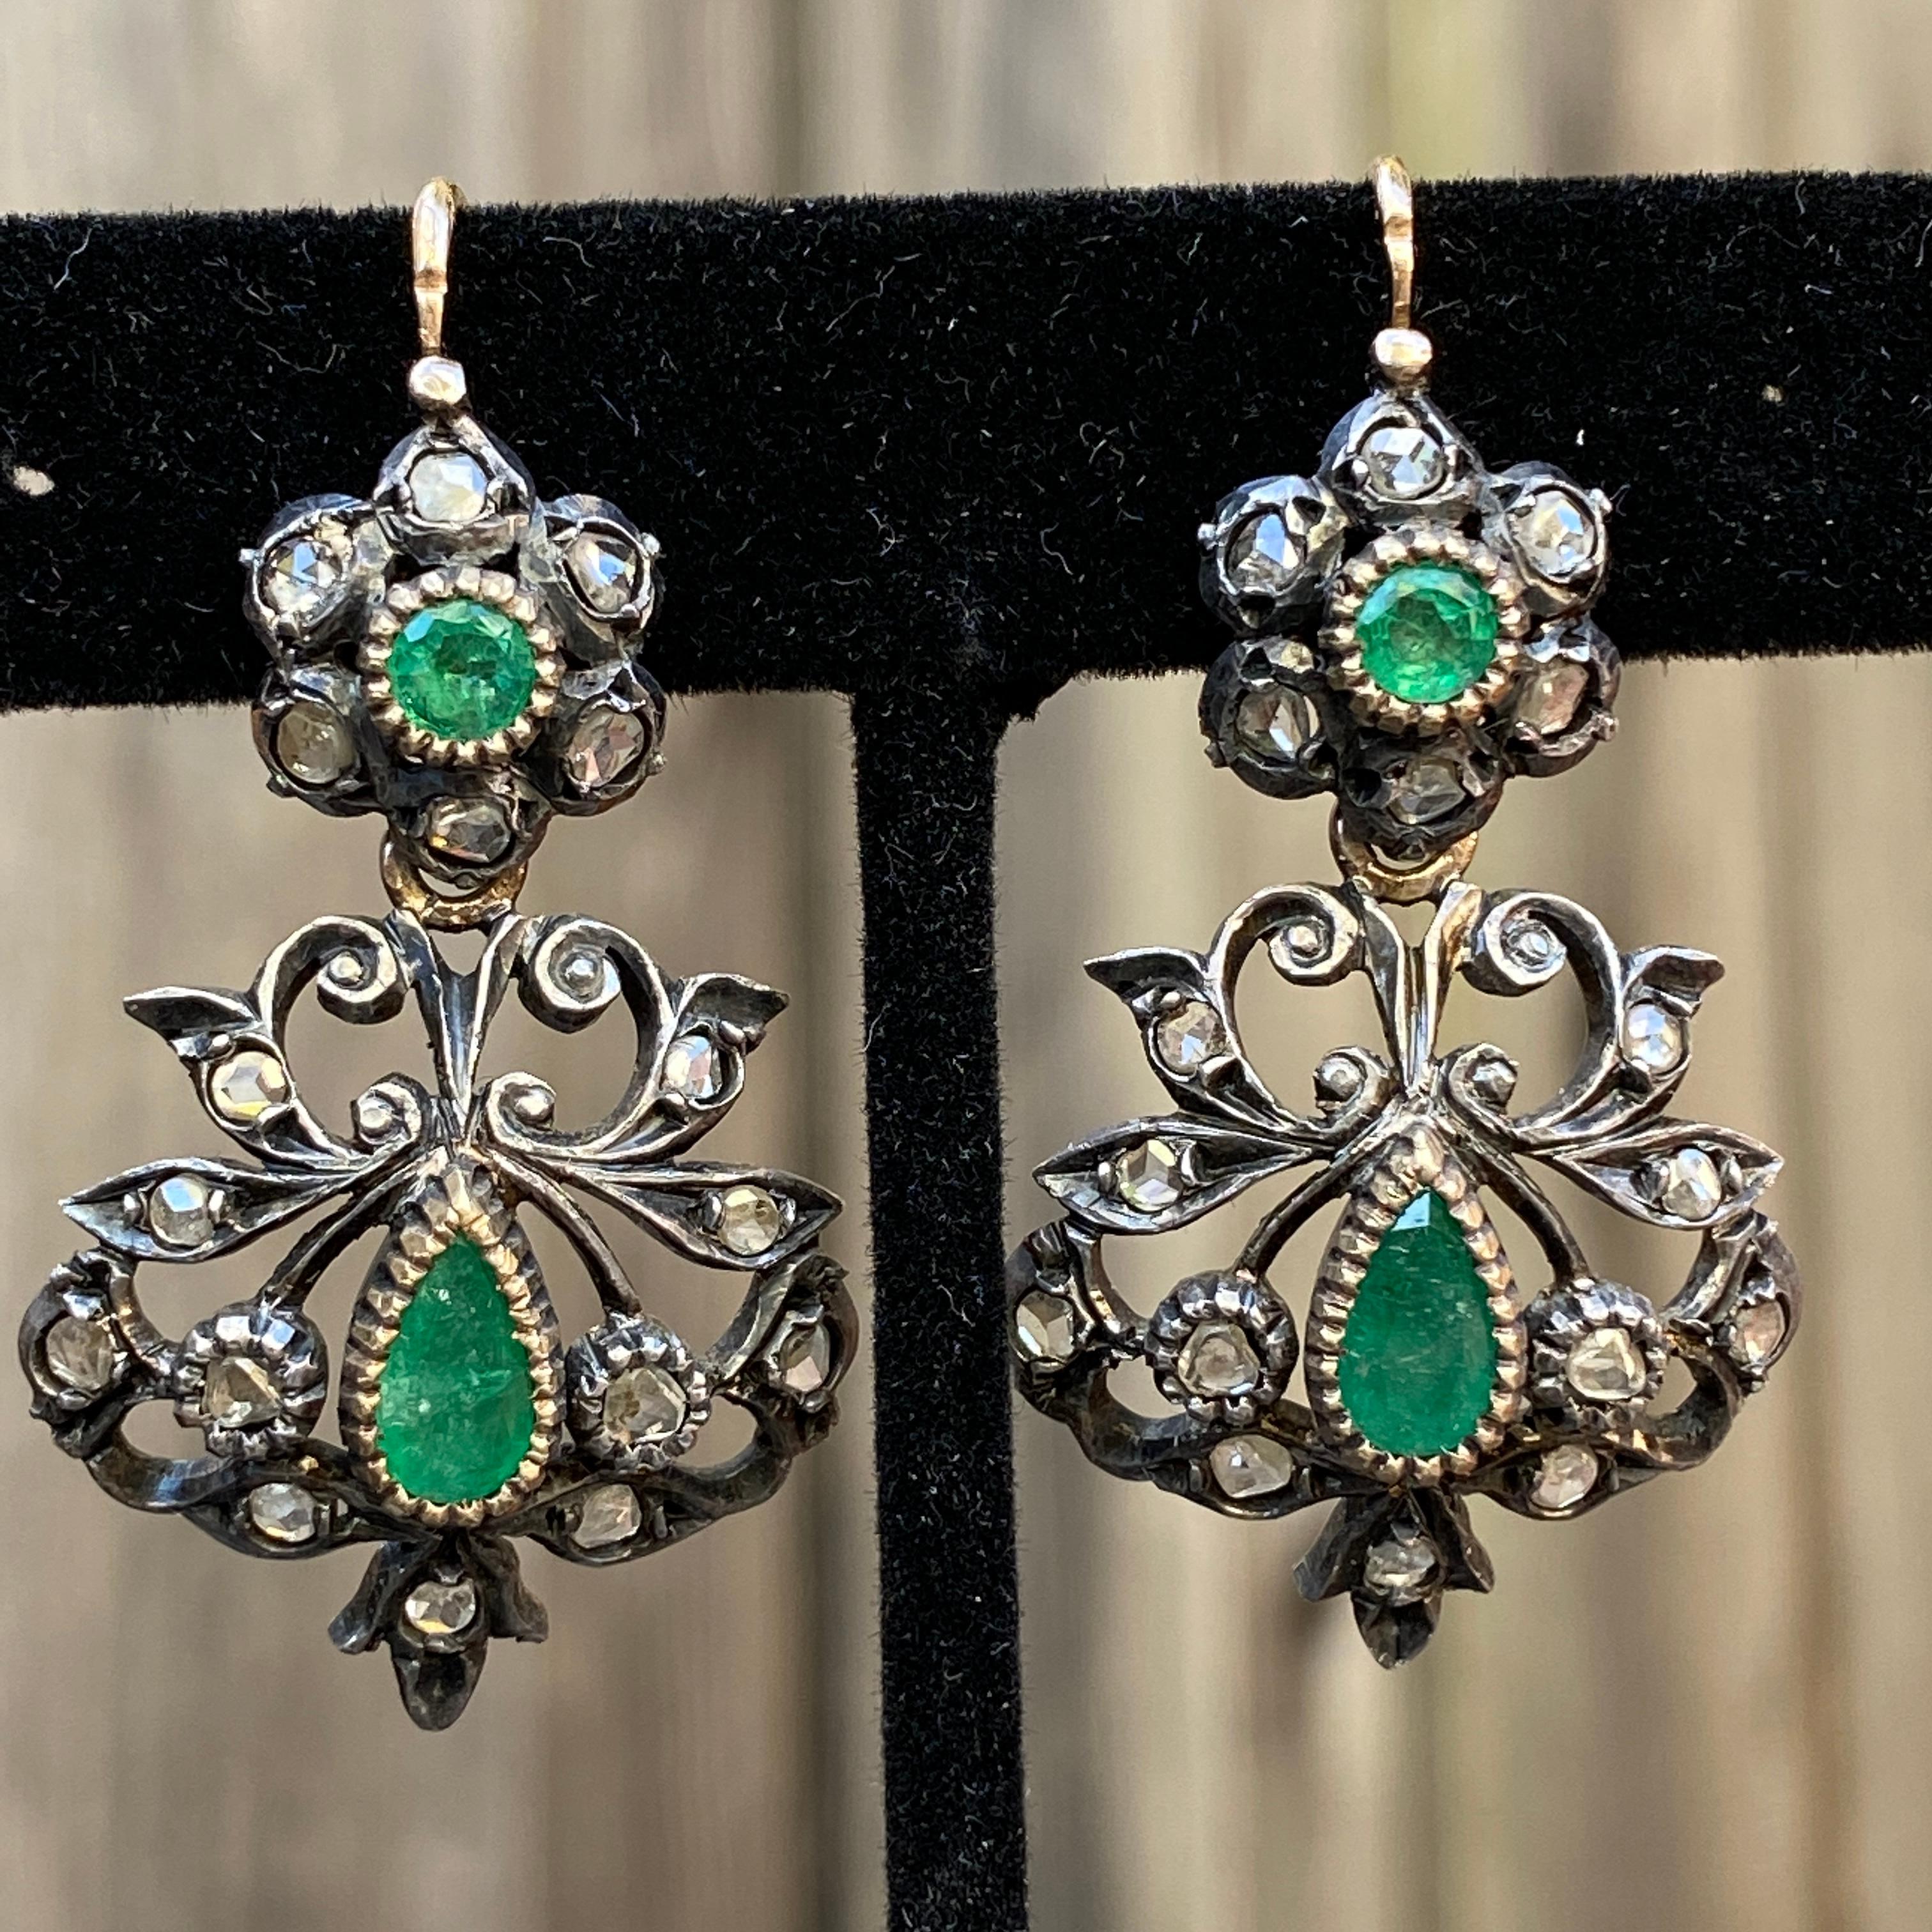 Einzelheiten:
Viktorianische Tag- und Nacht-Ohrringe mit natürlichen Smaragden und Diamanten im Rosenschliff! Ursprünglich wurden sie als 